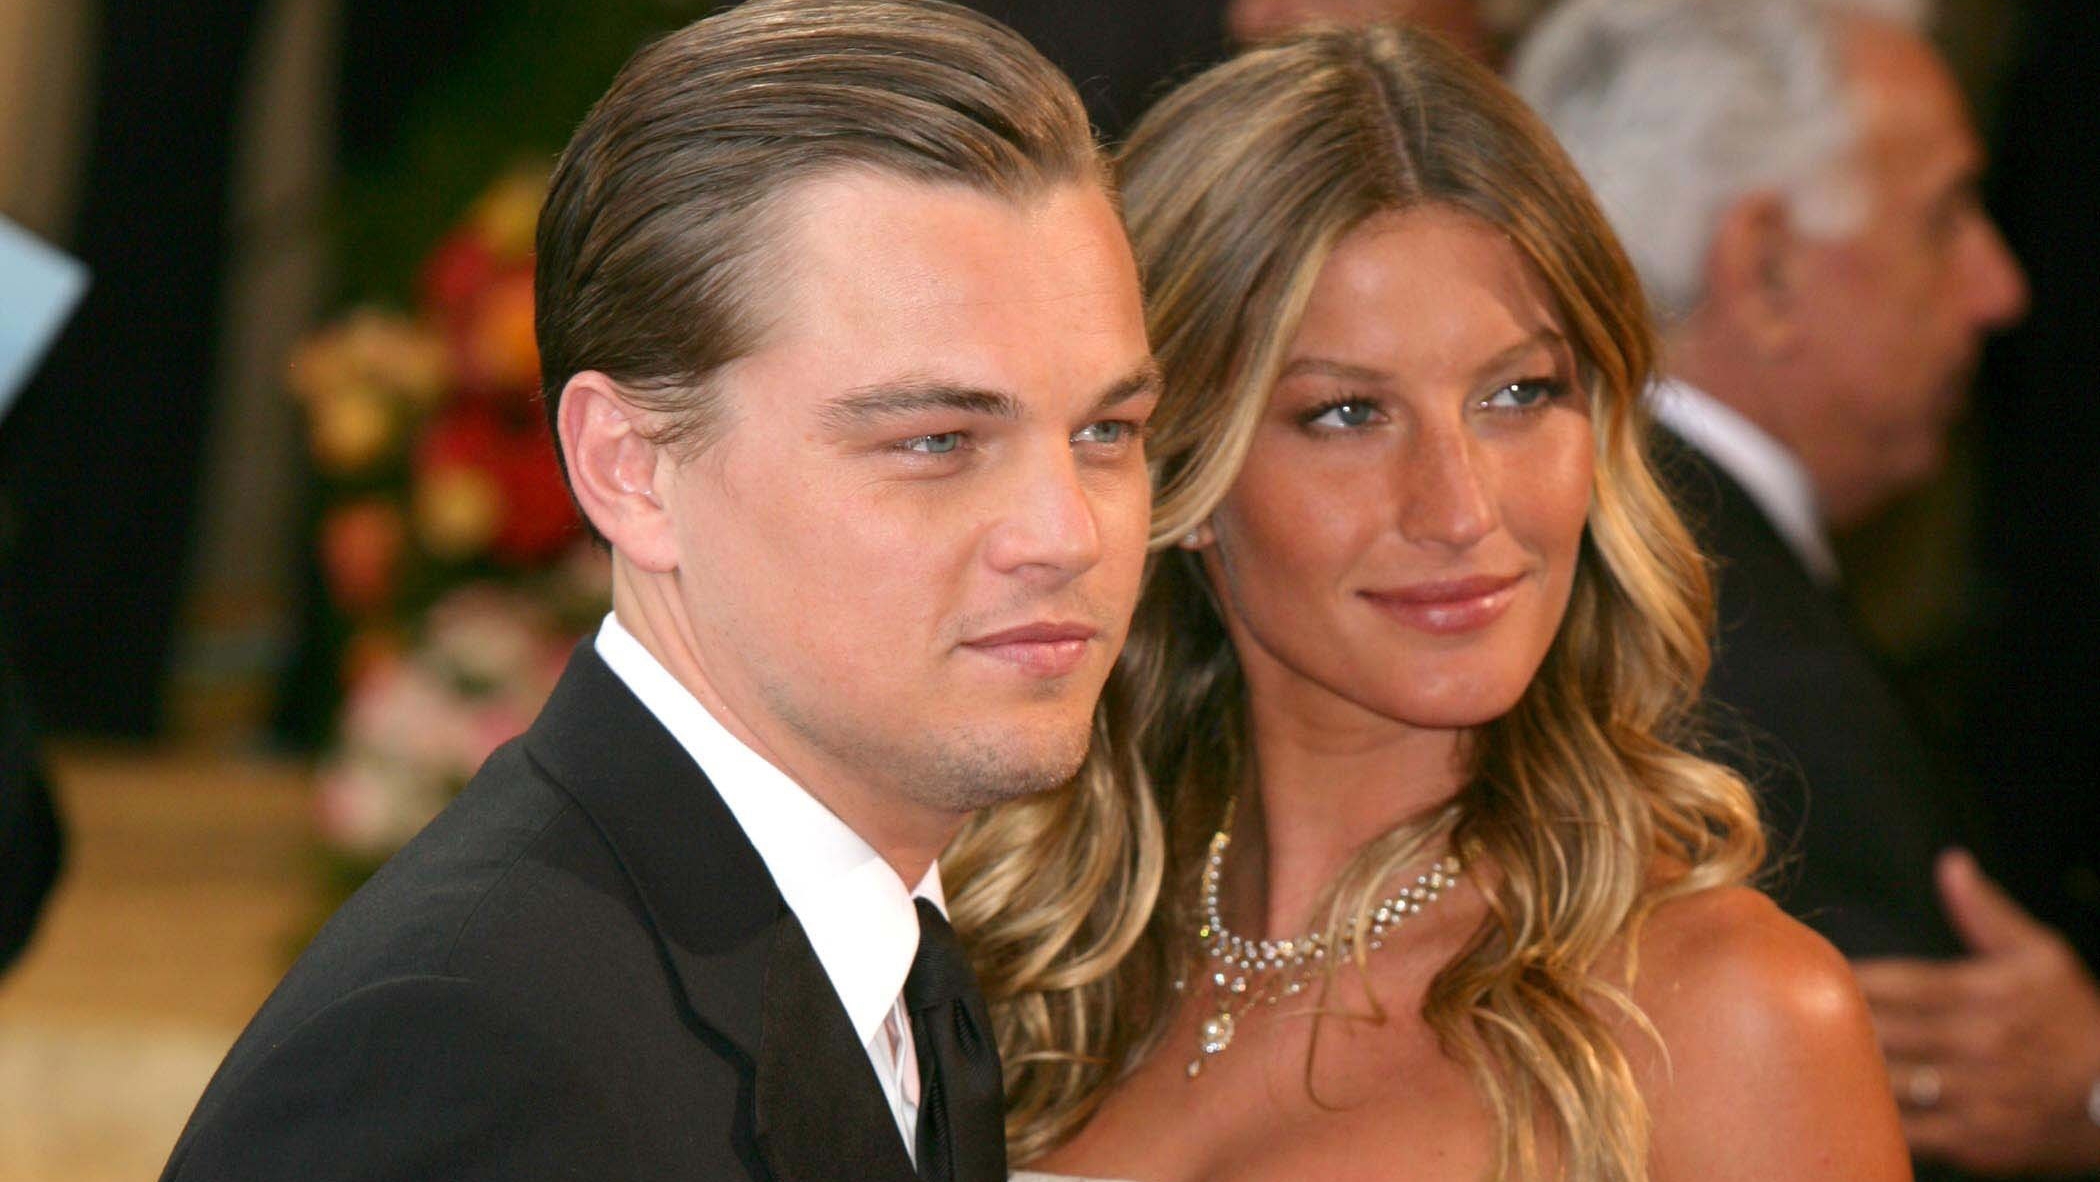 Leonardo DiCaprio és Gisele Bündchen